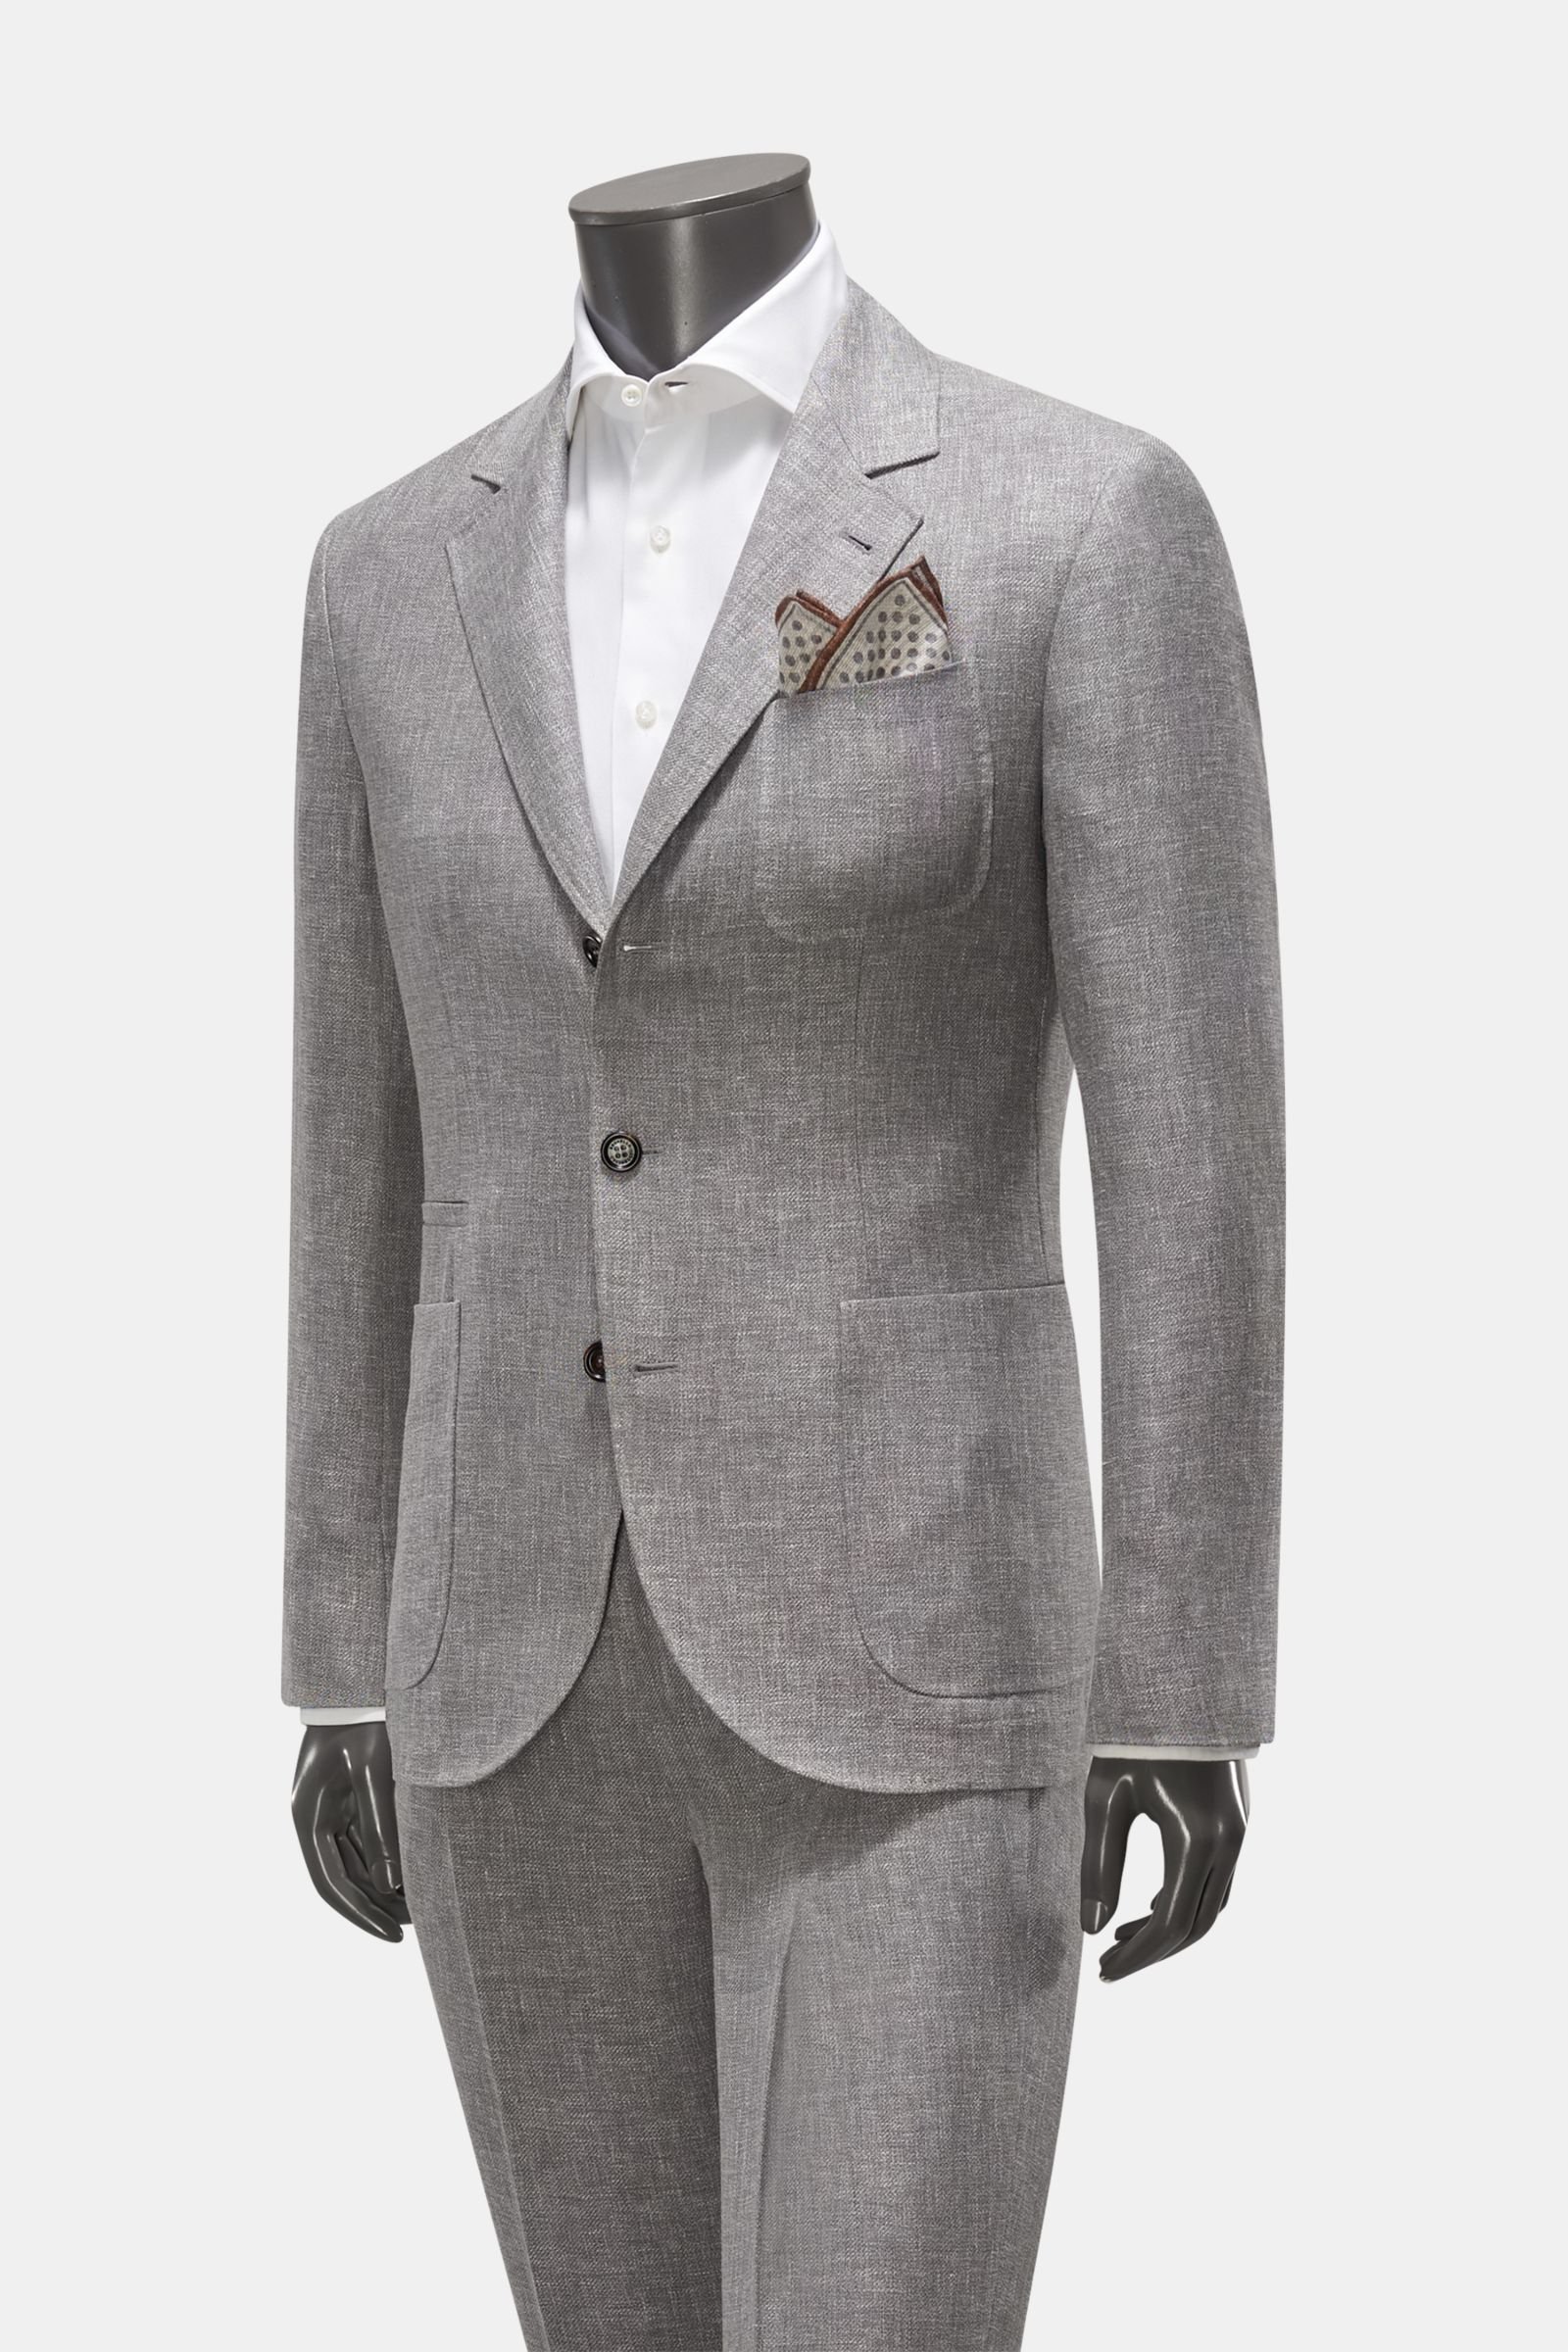 Suit grey